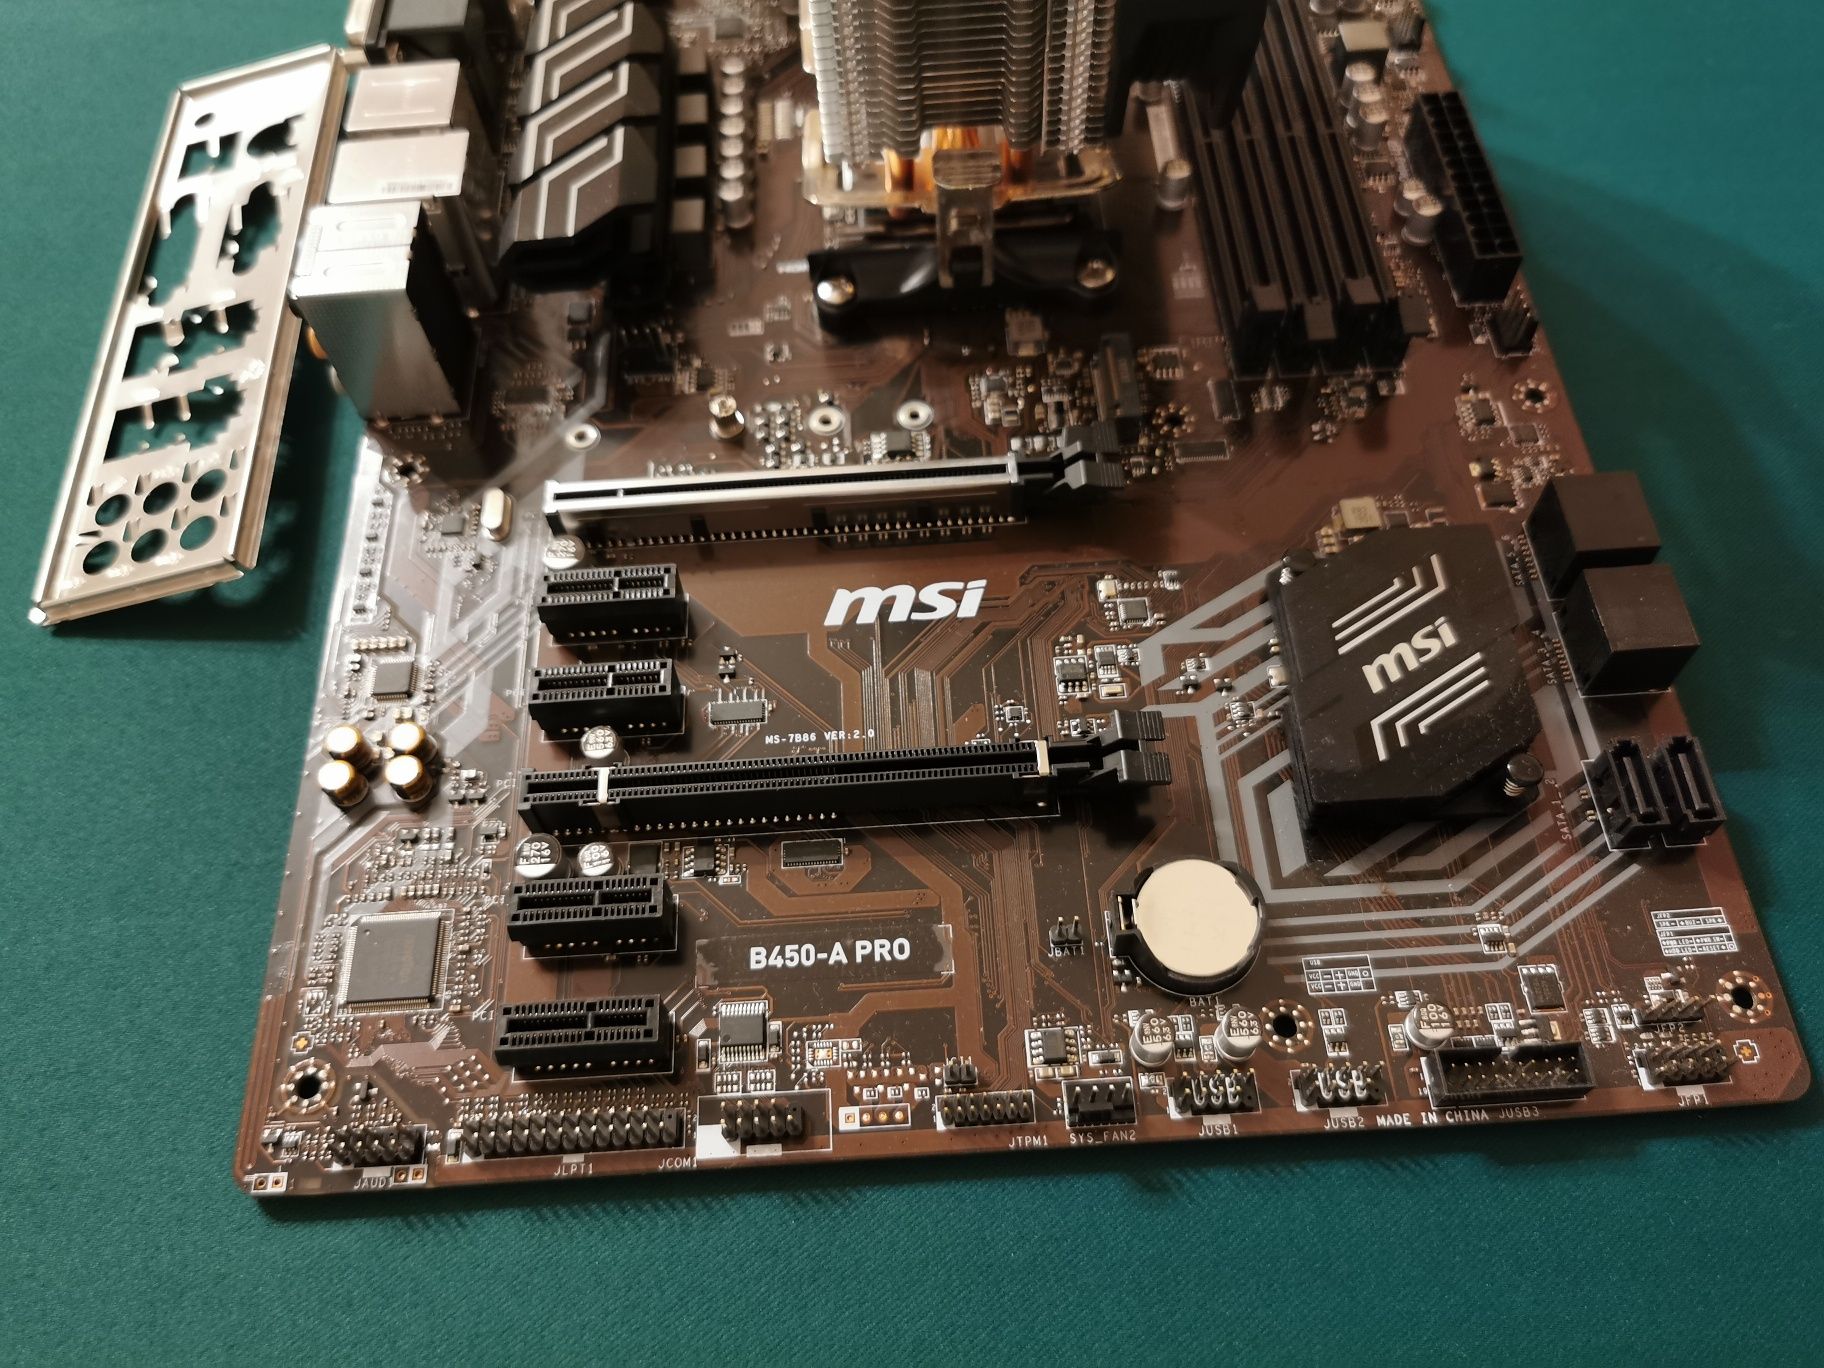 Procesor Ryzen 7 2700 + płyta główna msi b450a pro + Spartan 3